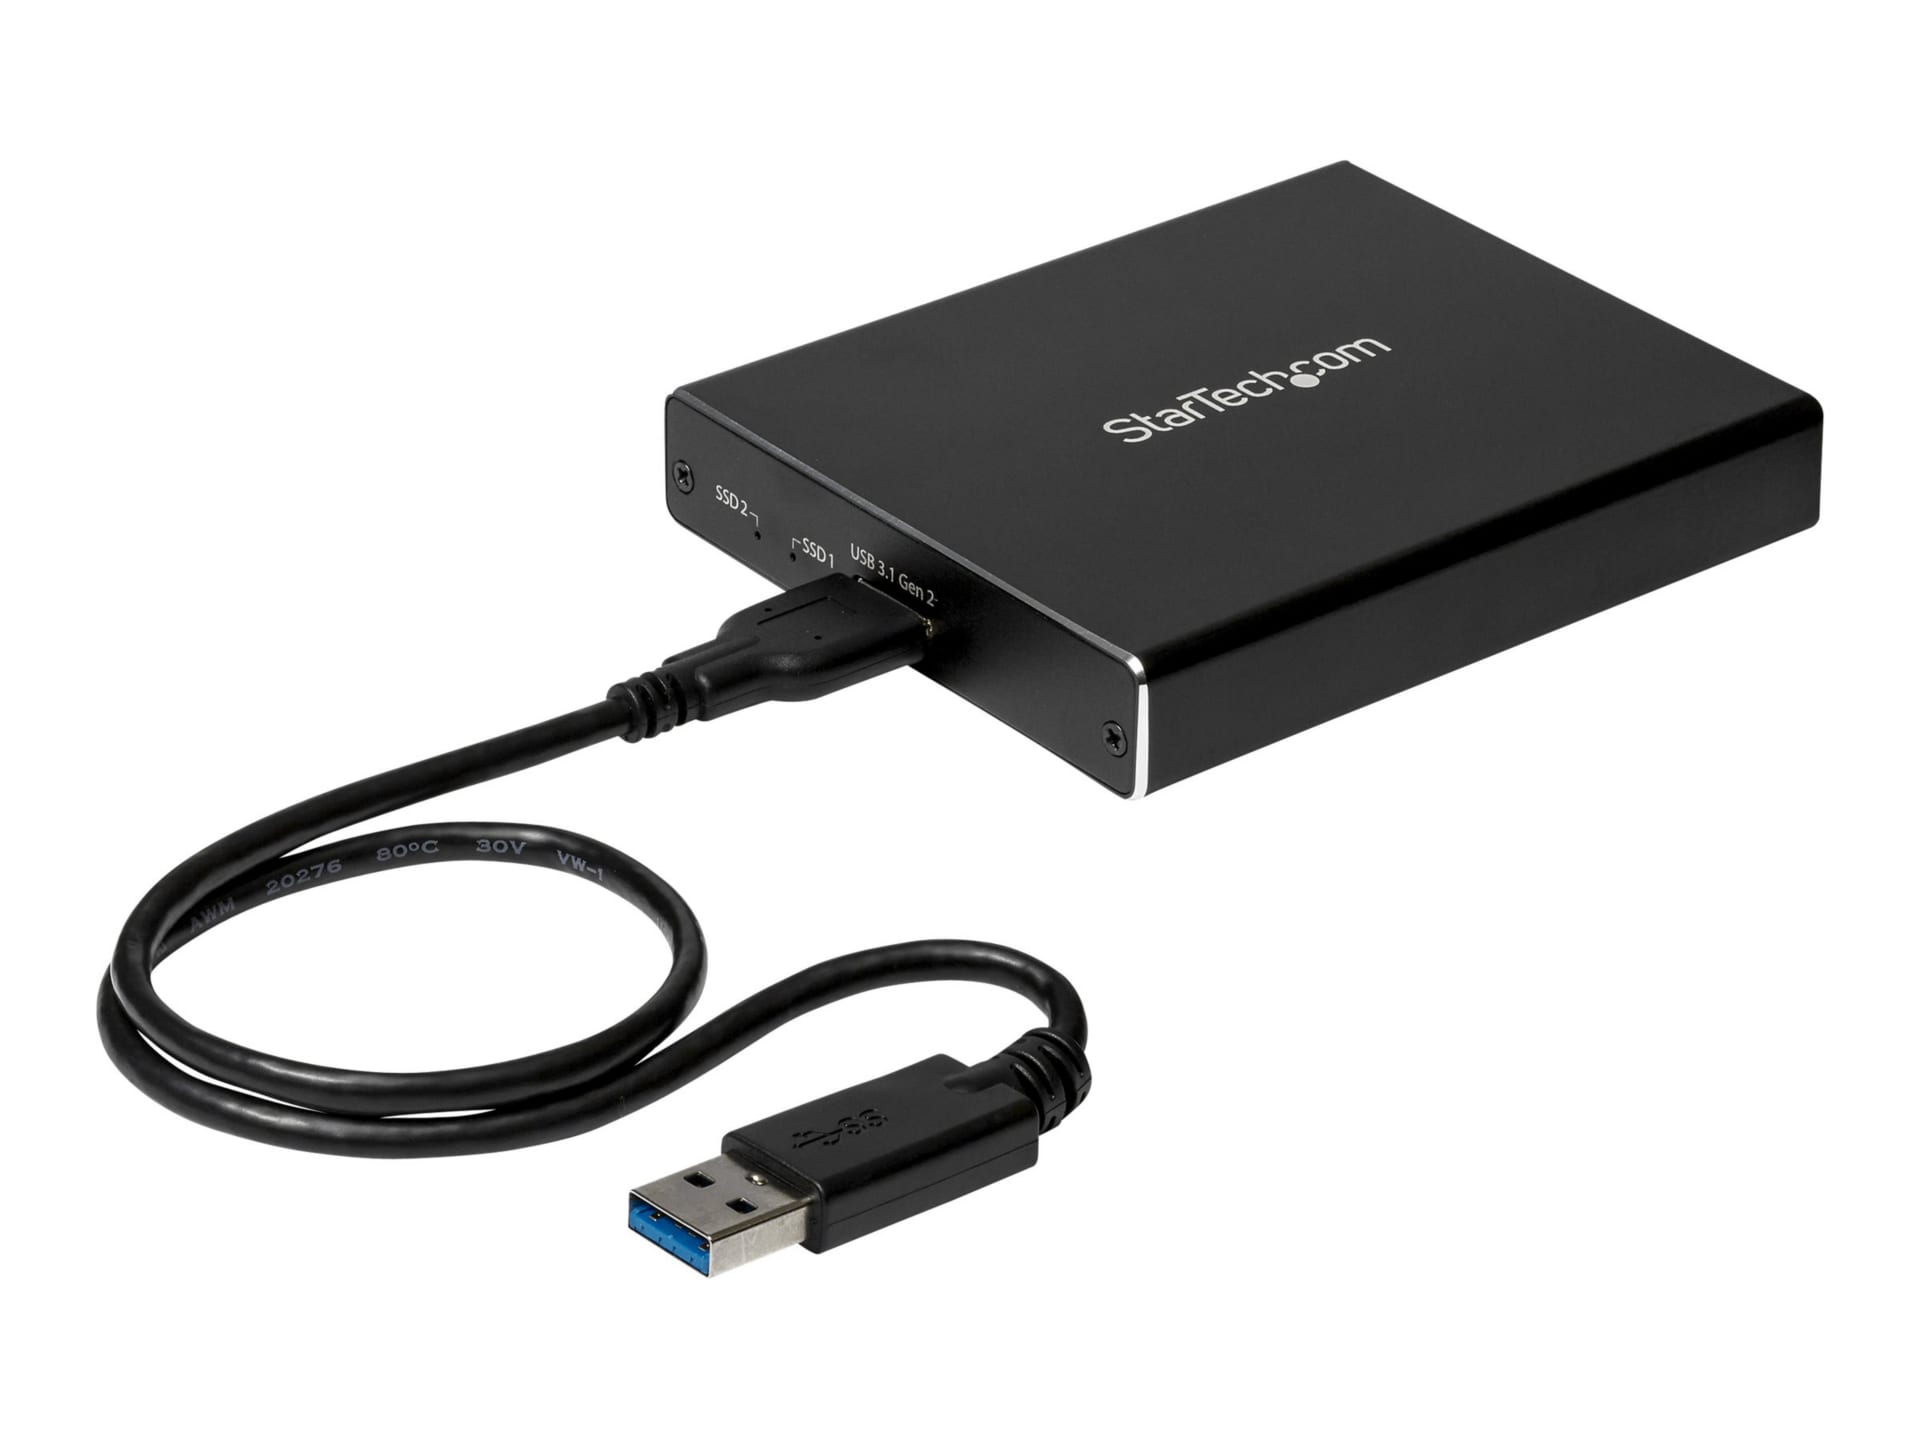 StarTech.com Dual M.2 Enclosure - RAID - USB 3.1 (10Gbps) - USB C and USB-A